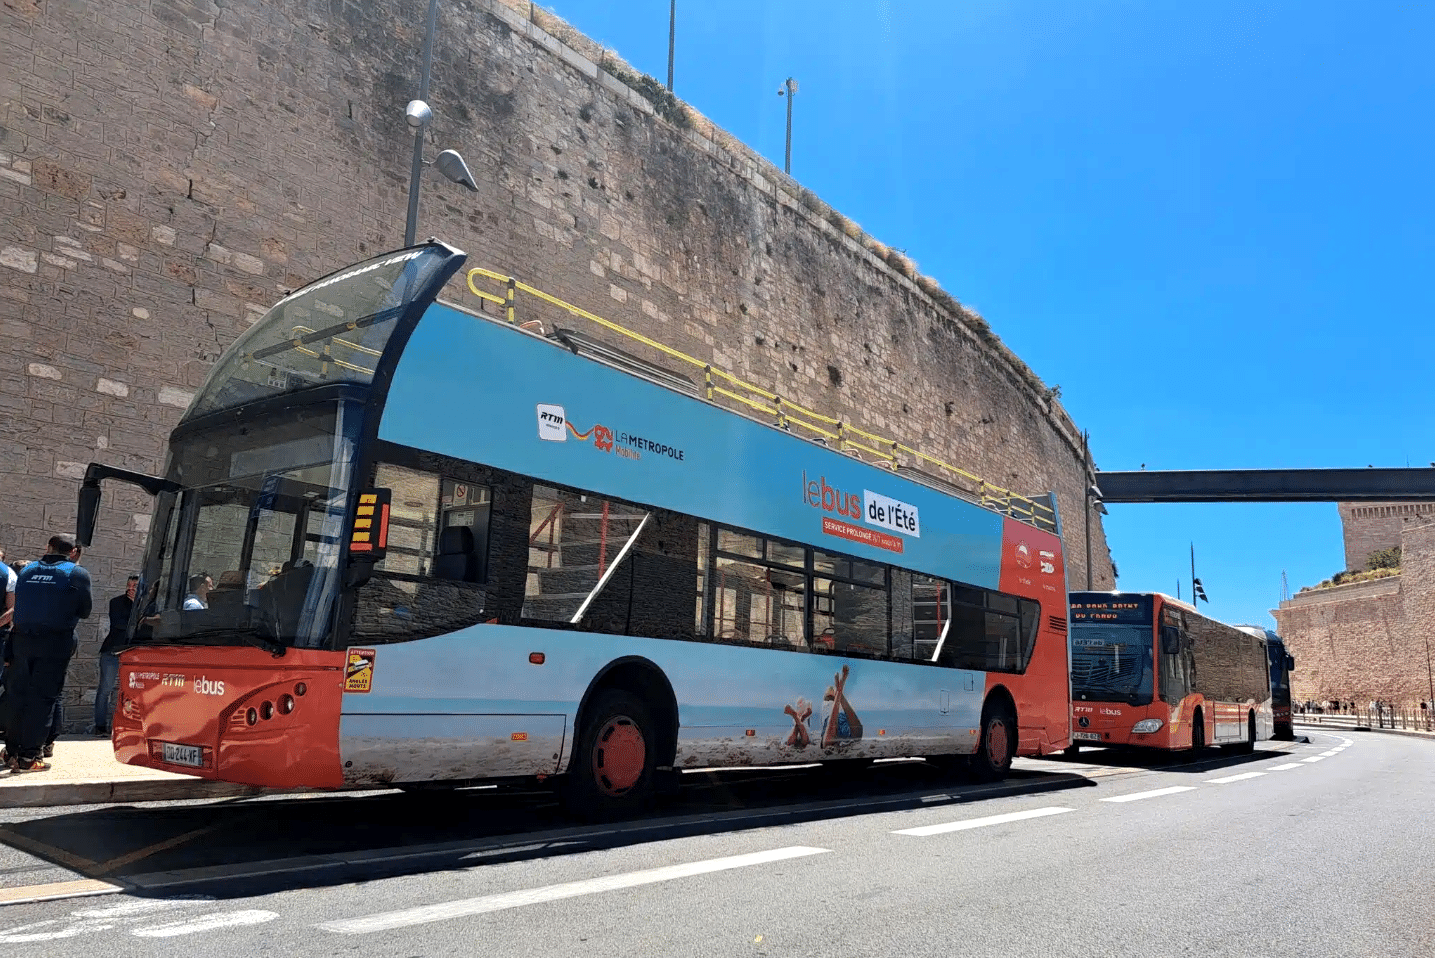 Bus à impériale, Un bus à impériale et des lignes renforcées vers le littoral pour la saison estivale, Made in Marseille